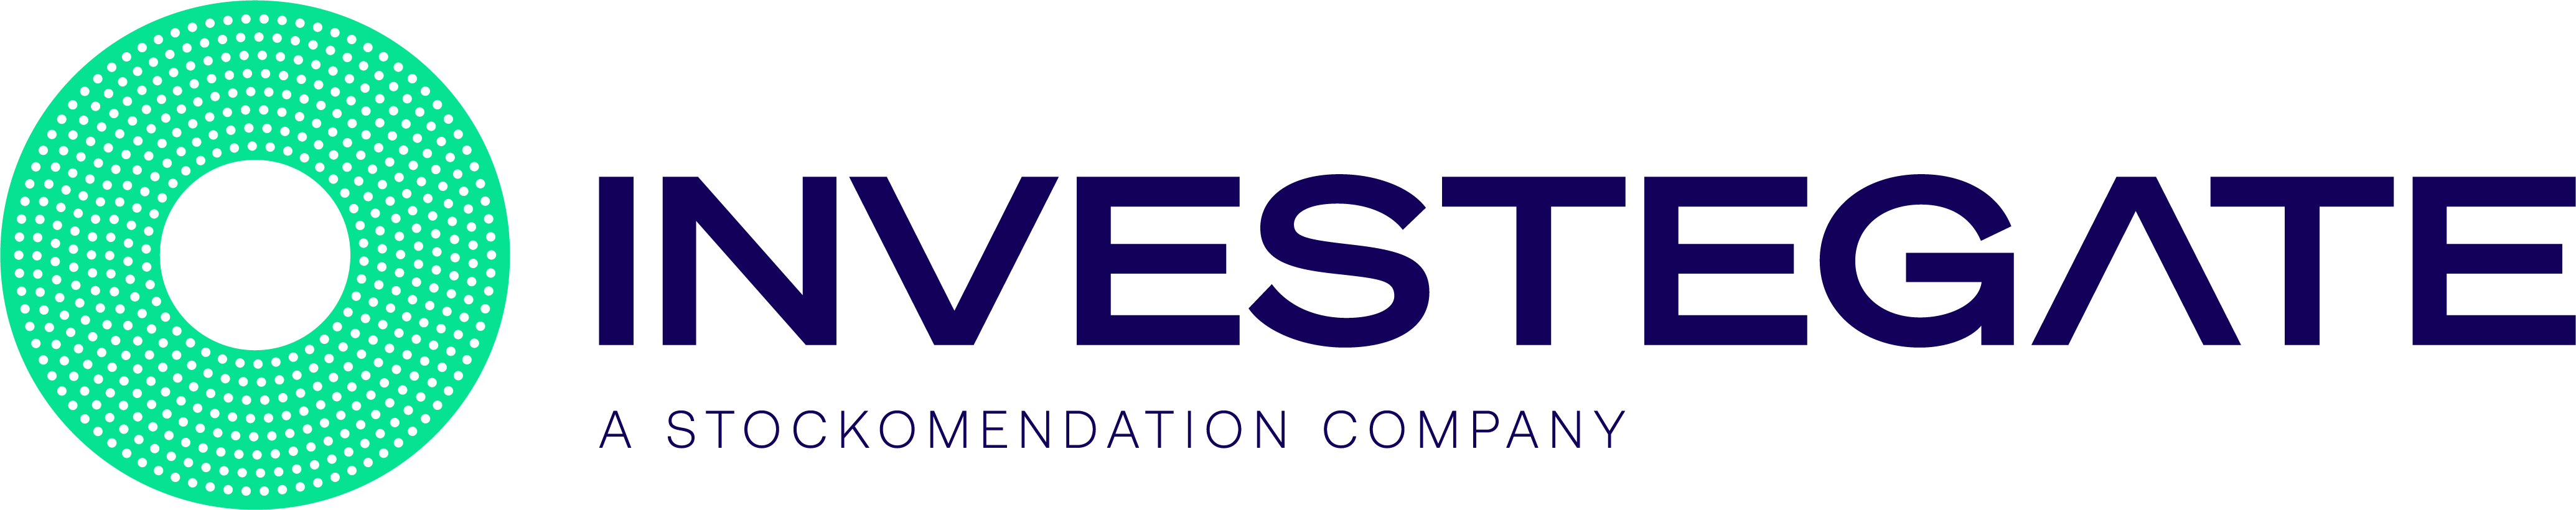 Investegate logo